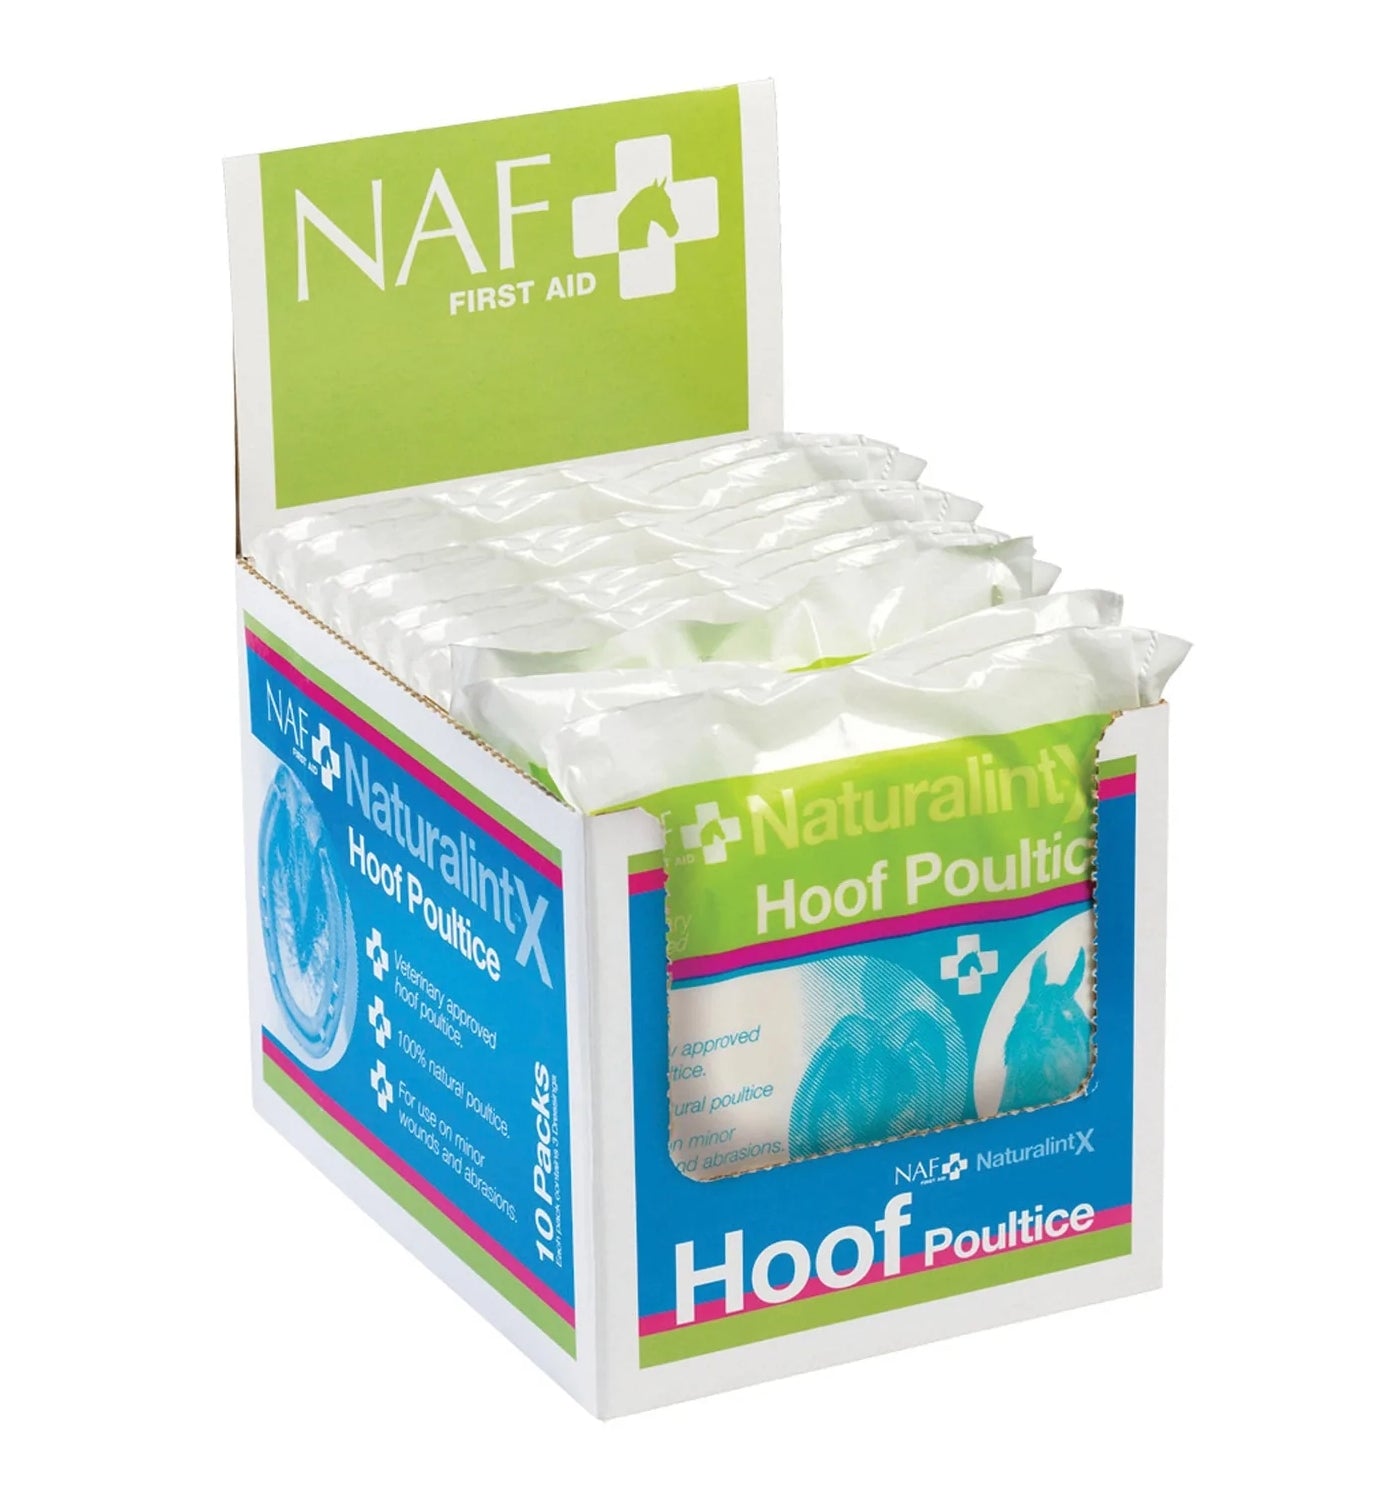 NAF NaturalintX - Hoof Poultice for Horses (3 Pack) - Buy Online SPR Centre UK